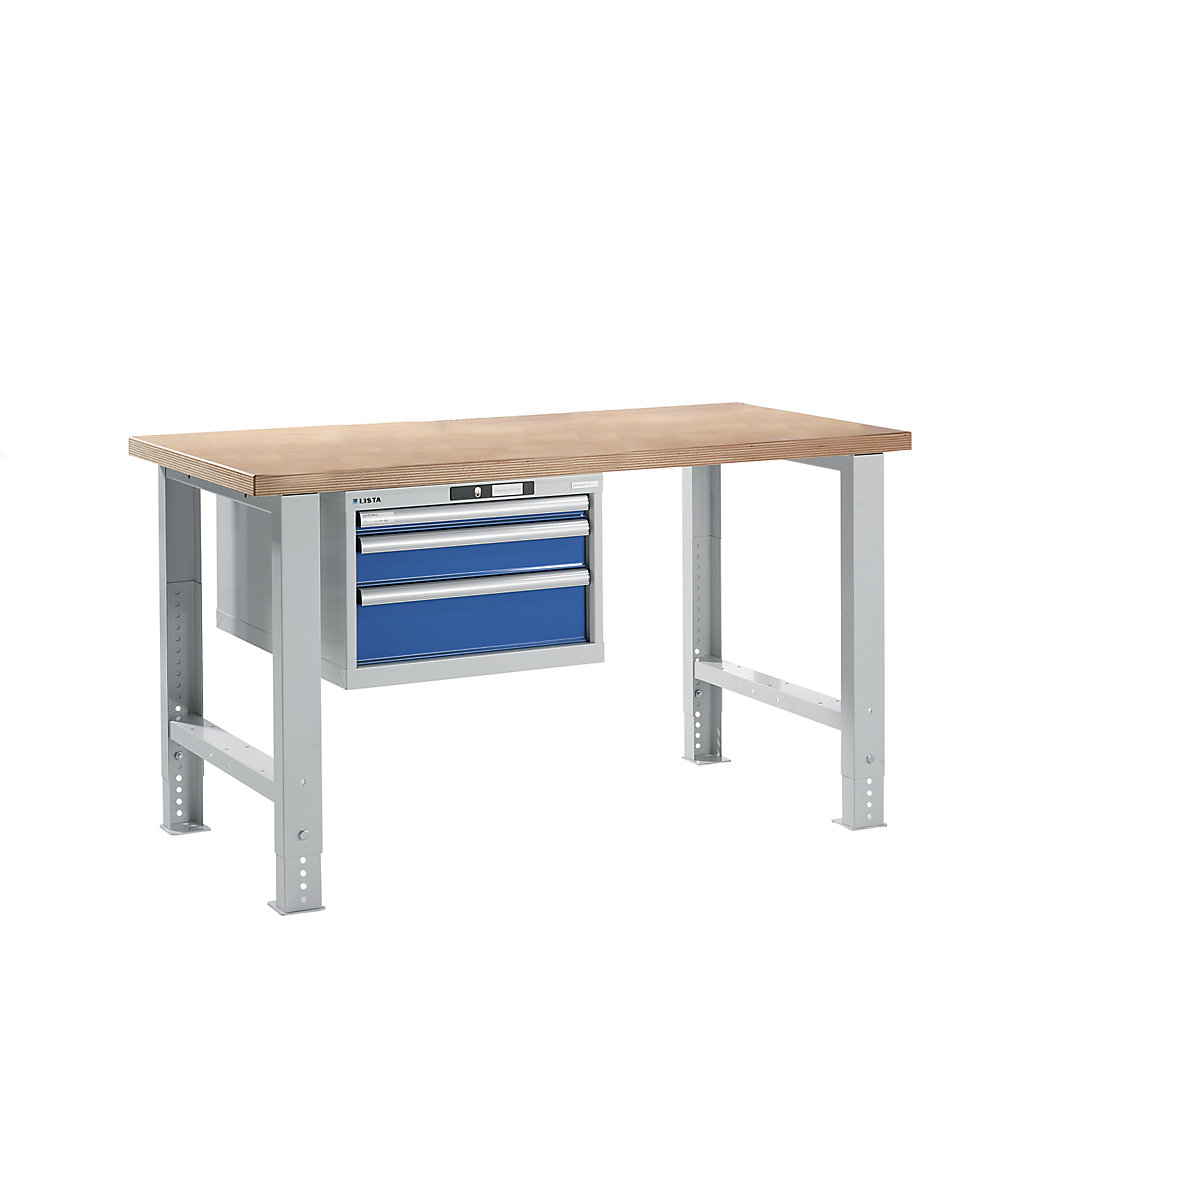 Dílenský stůl ve stavebnicovém systému – LISTA, výška 740 – 1090 mm, závěsná skříň, 3 zásuvky, hořcově modrá, šířka stolu 1500 mm-15